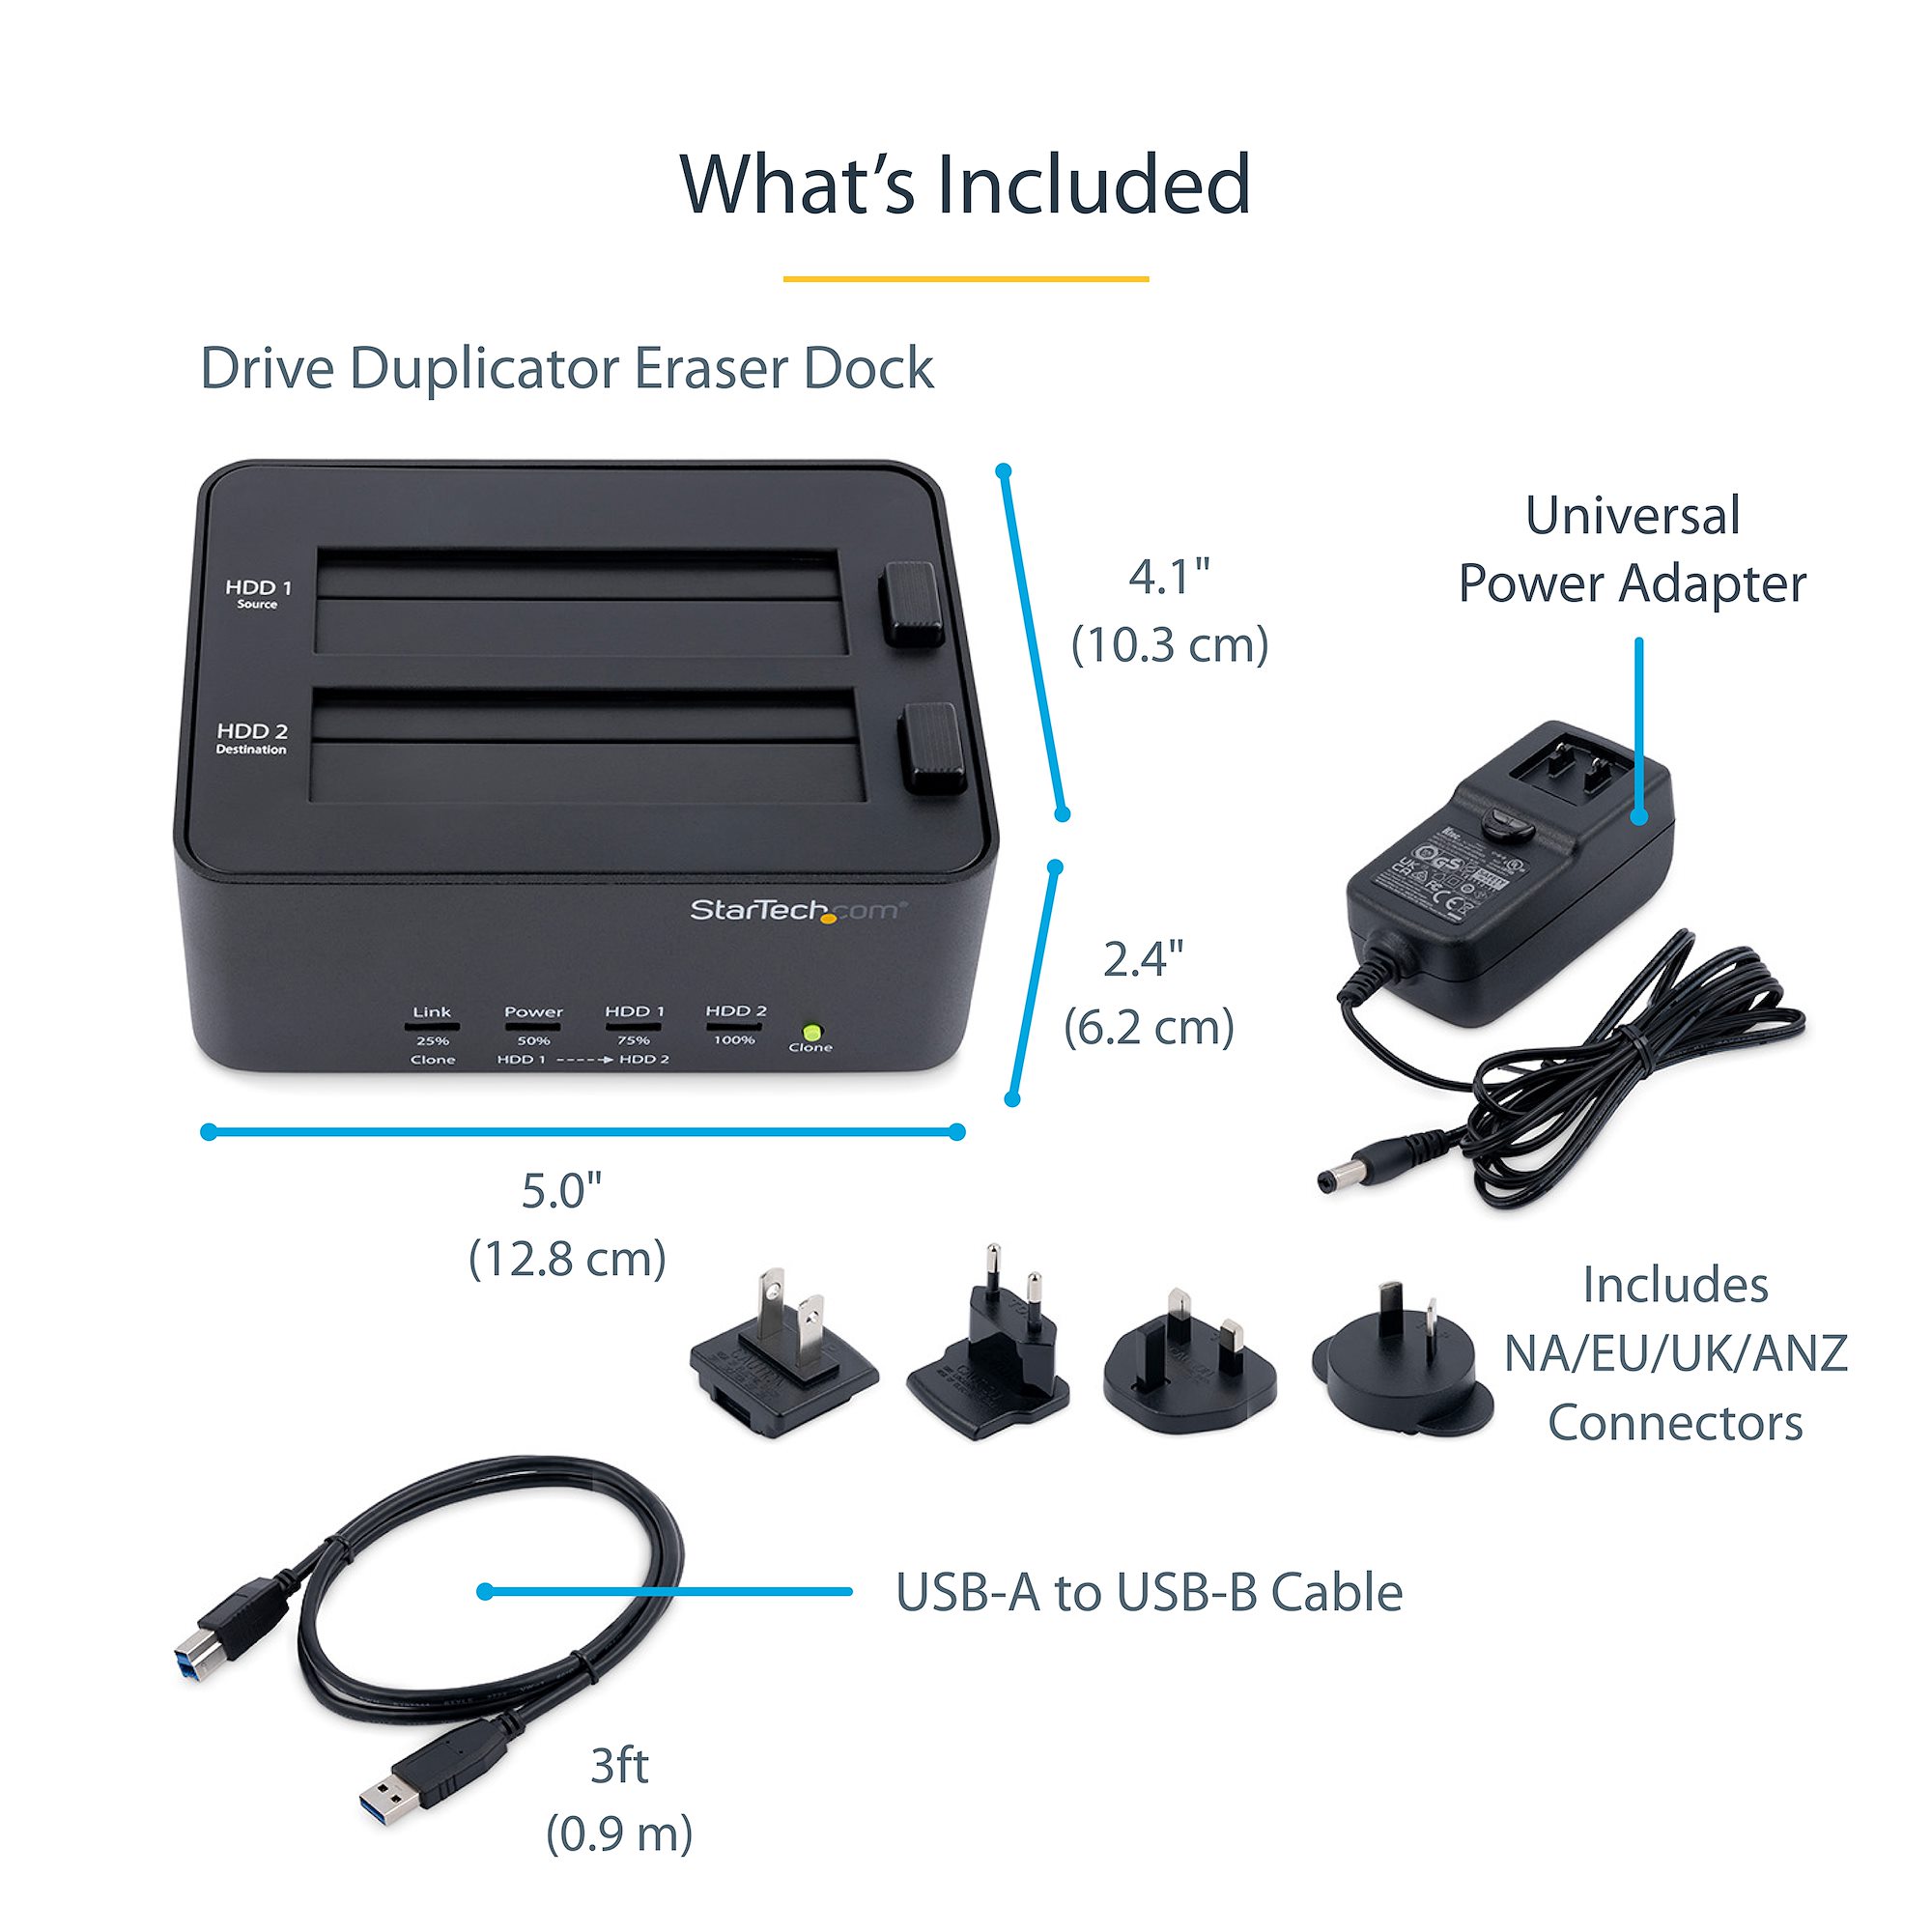 Duplicateur et Effaceur de Disque Dur à 2 baies, Cloneur/Copieur Autonome  de HDD/SSD SATA, Dock USB 3.0 vers SATA, Station d'Accueil pour Duplicateur